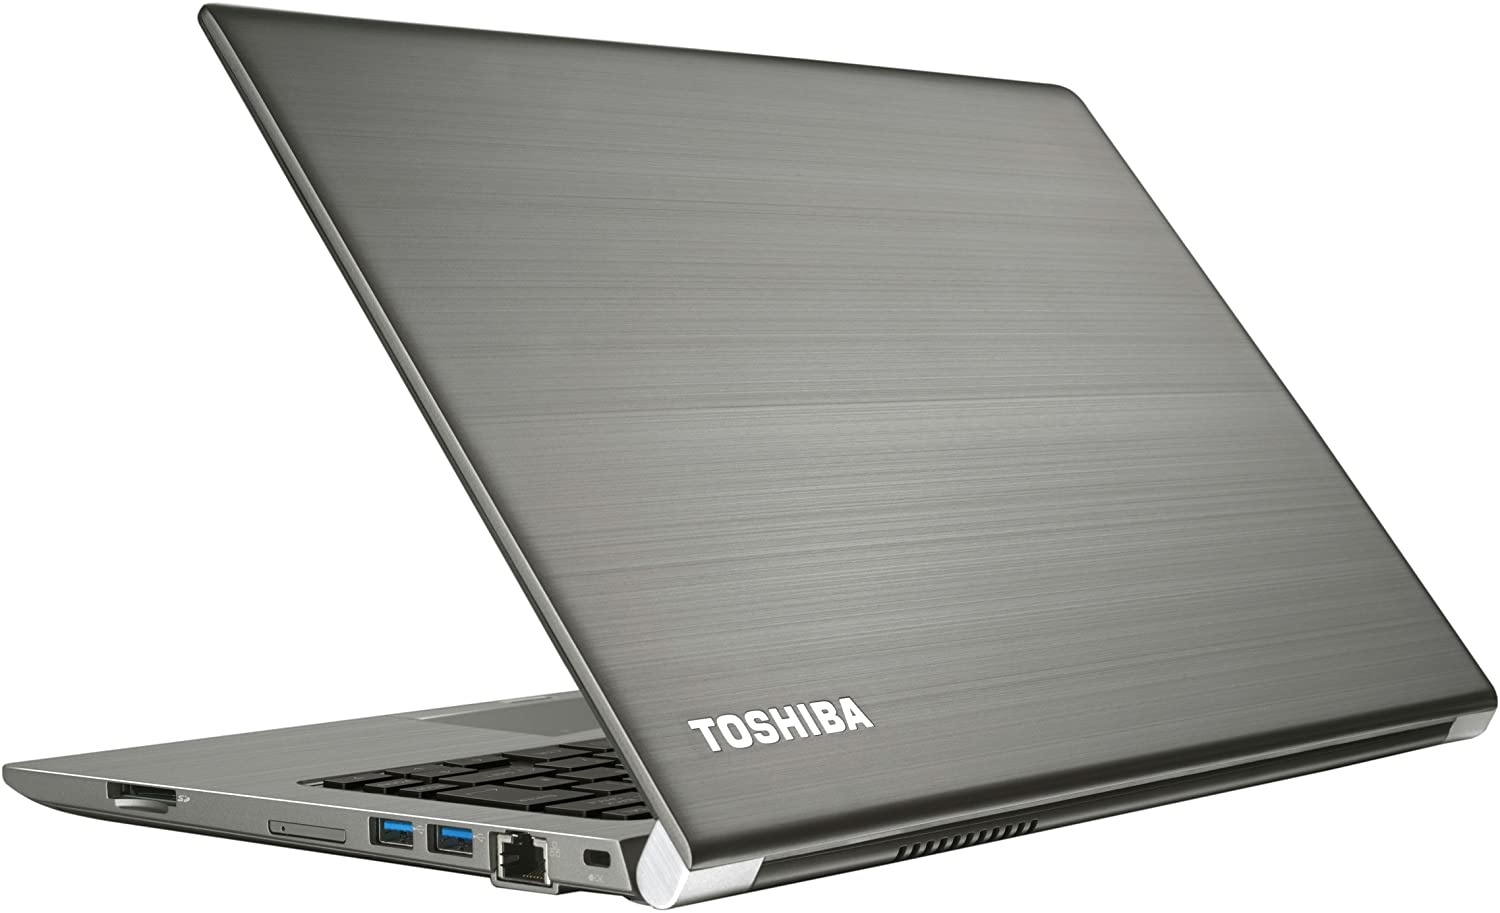 Laptop Toshiba Z30 màn full DH cảm ứng, chip core i7 6600u, ram 16, body magie.